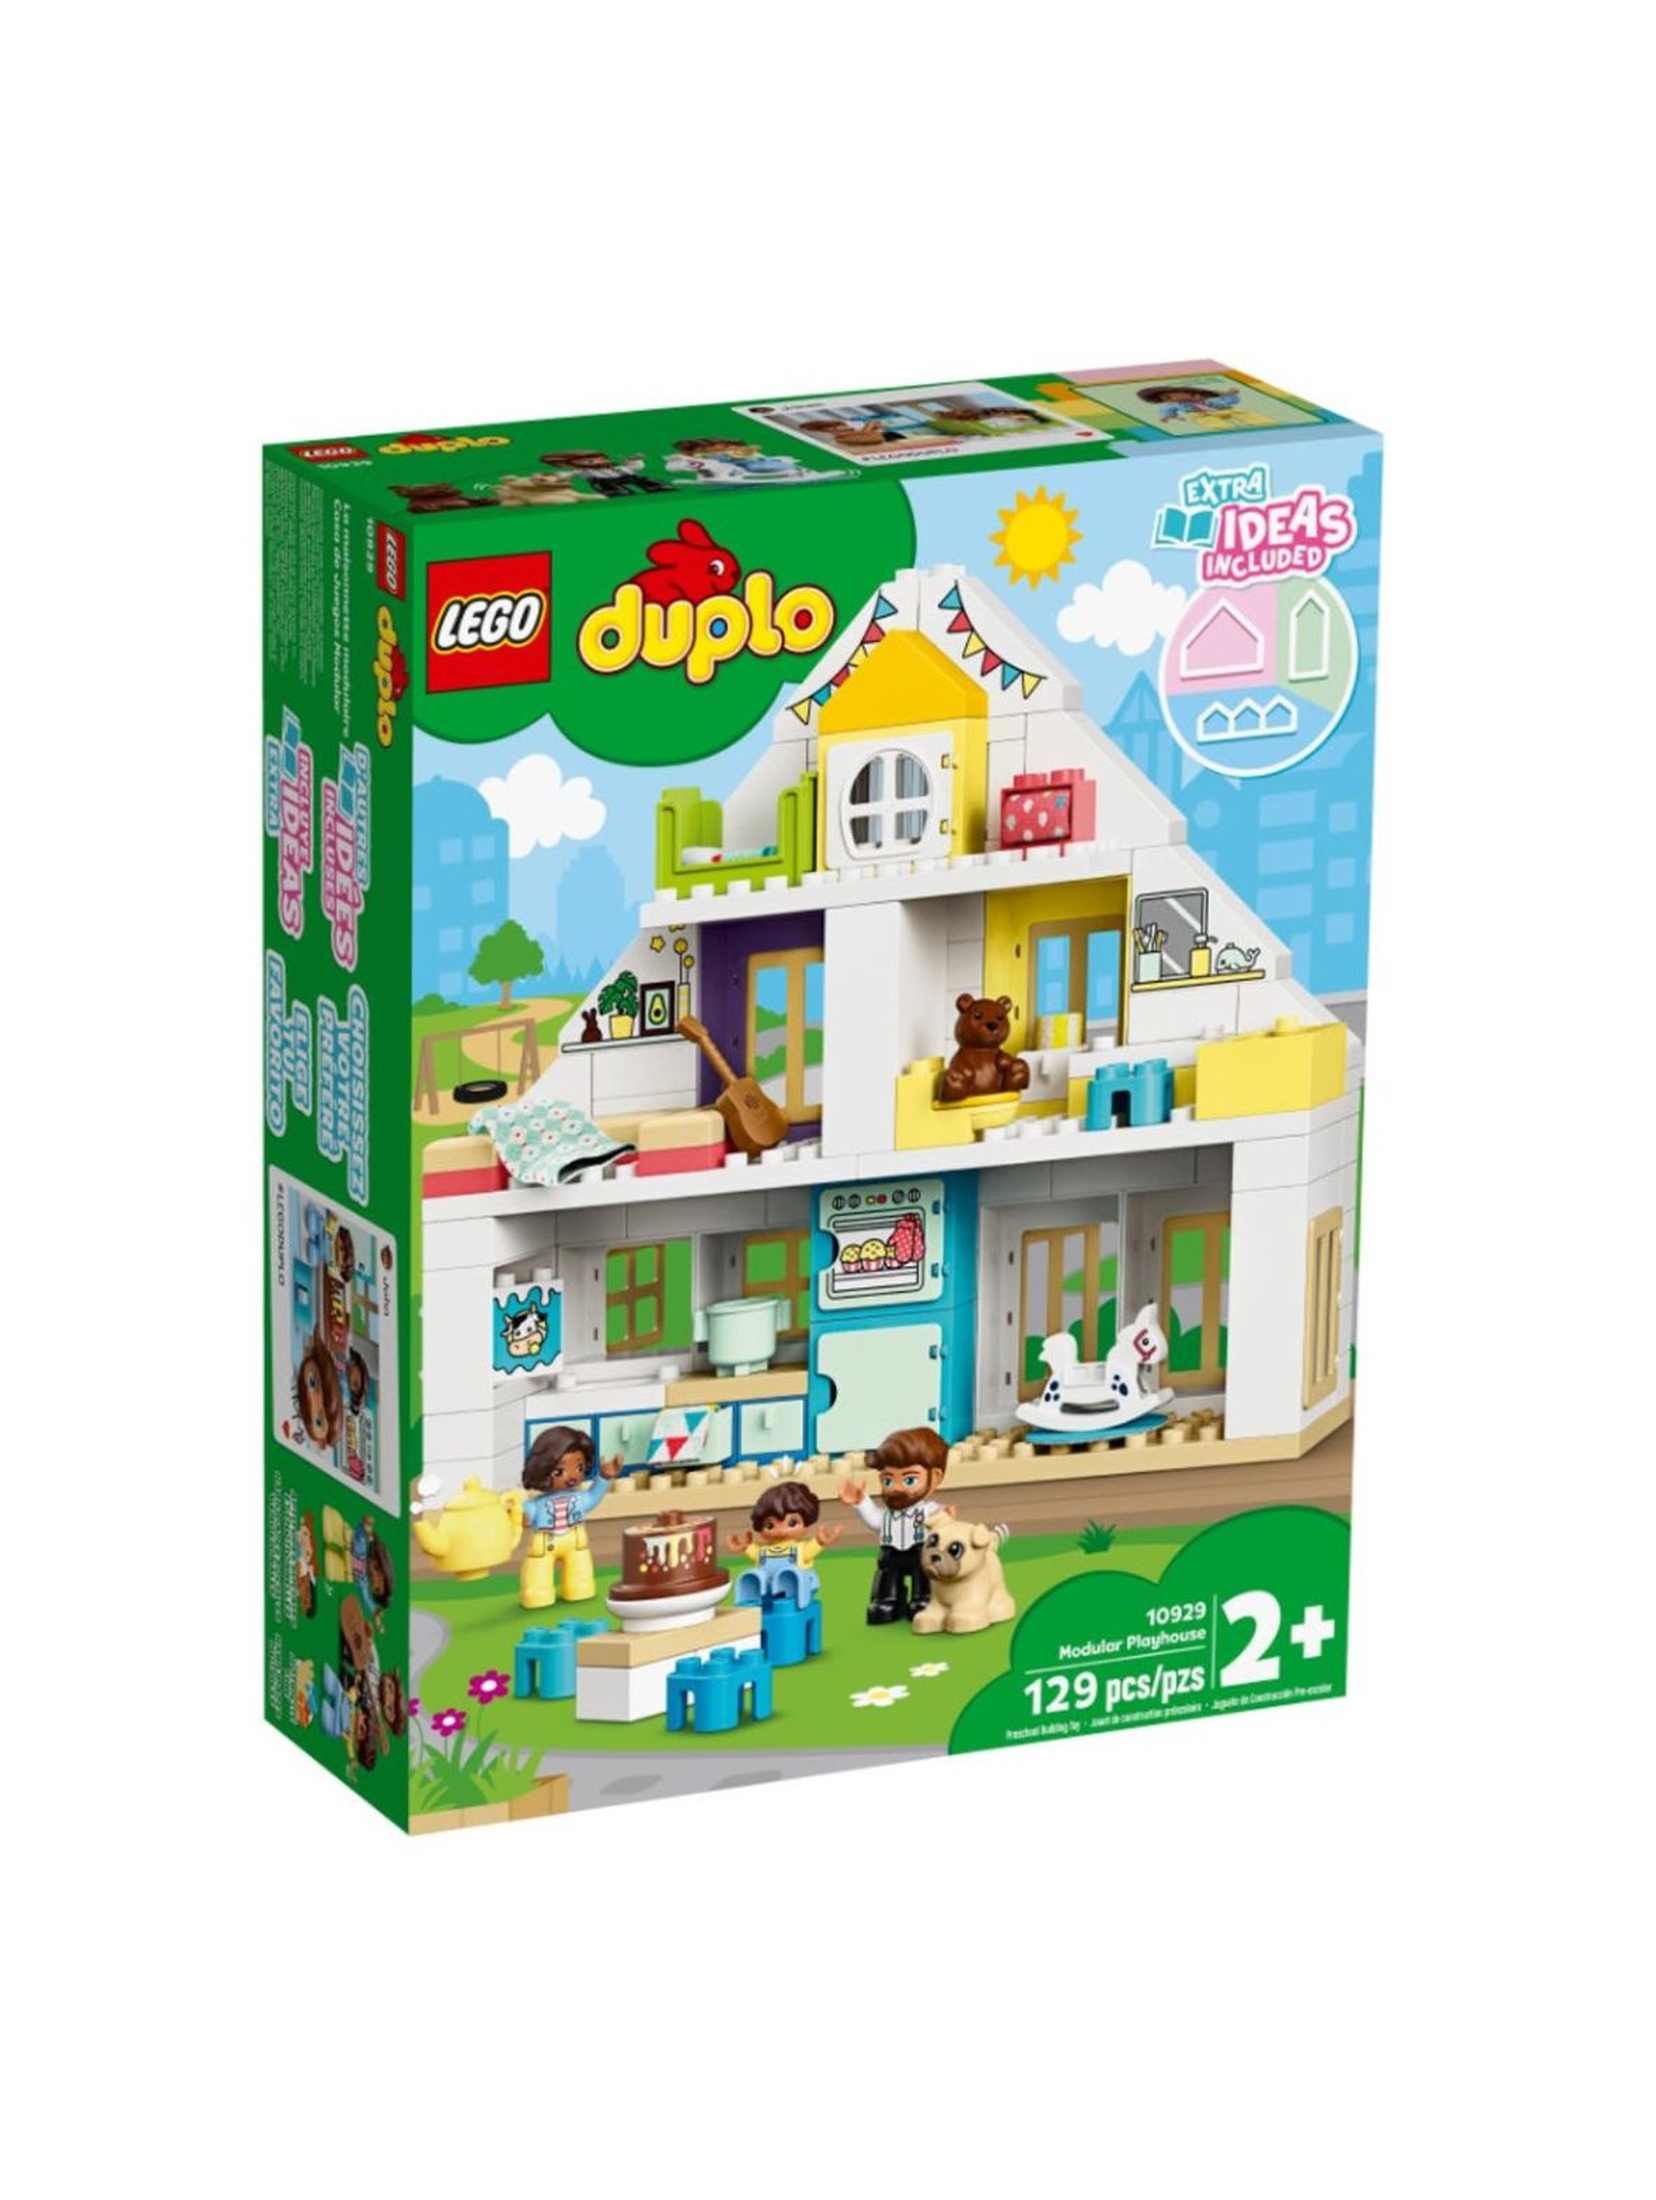 Lego Duplo 10929 - Wielofunkcyjny domek- 129 elementów wiek 2+